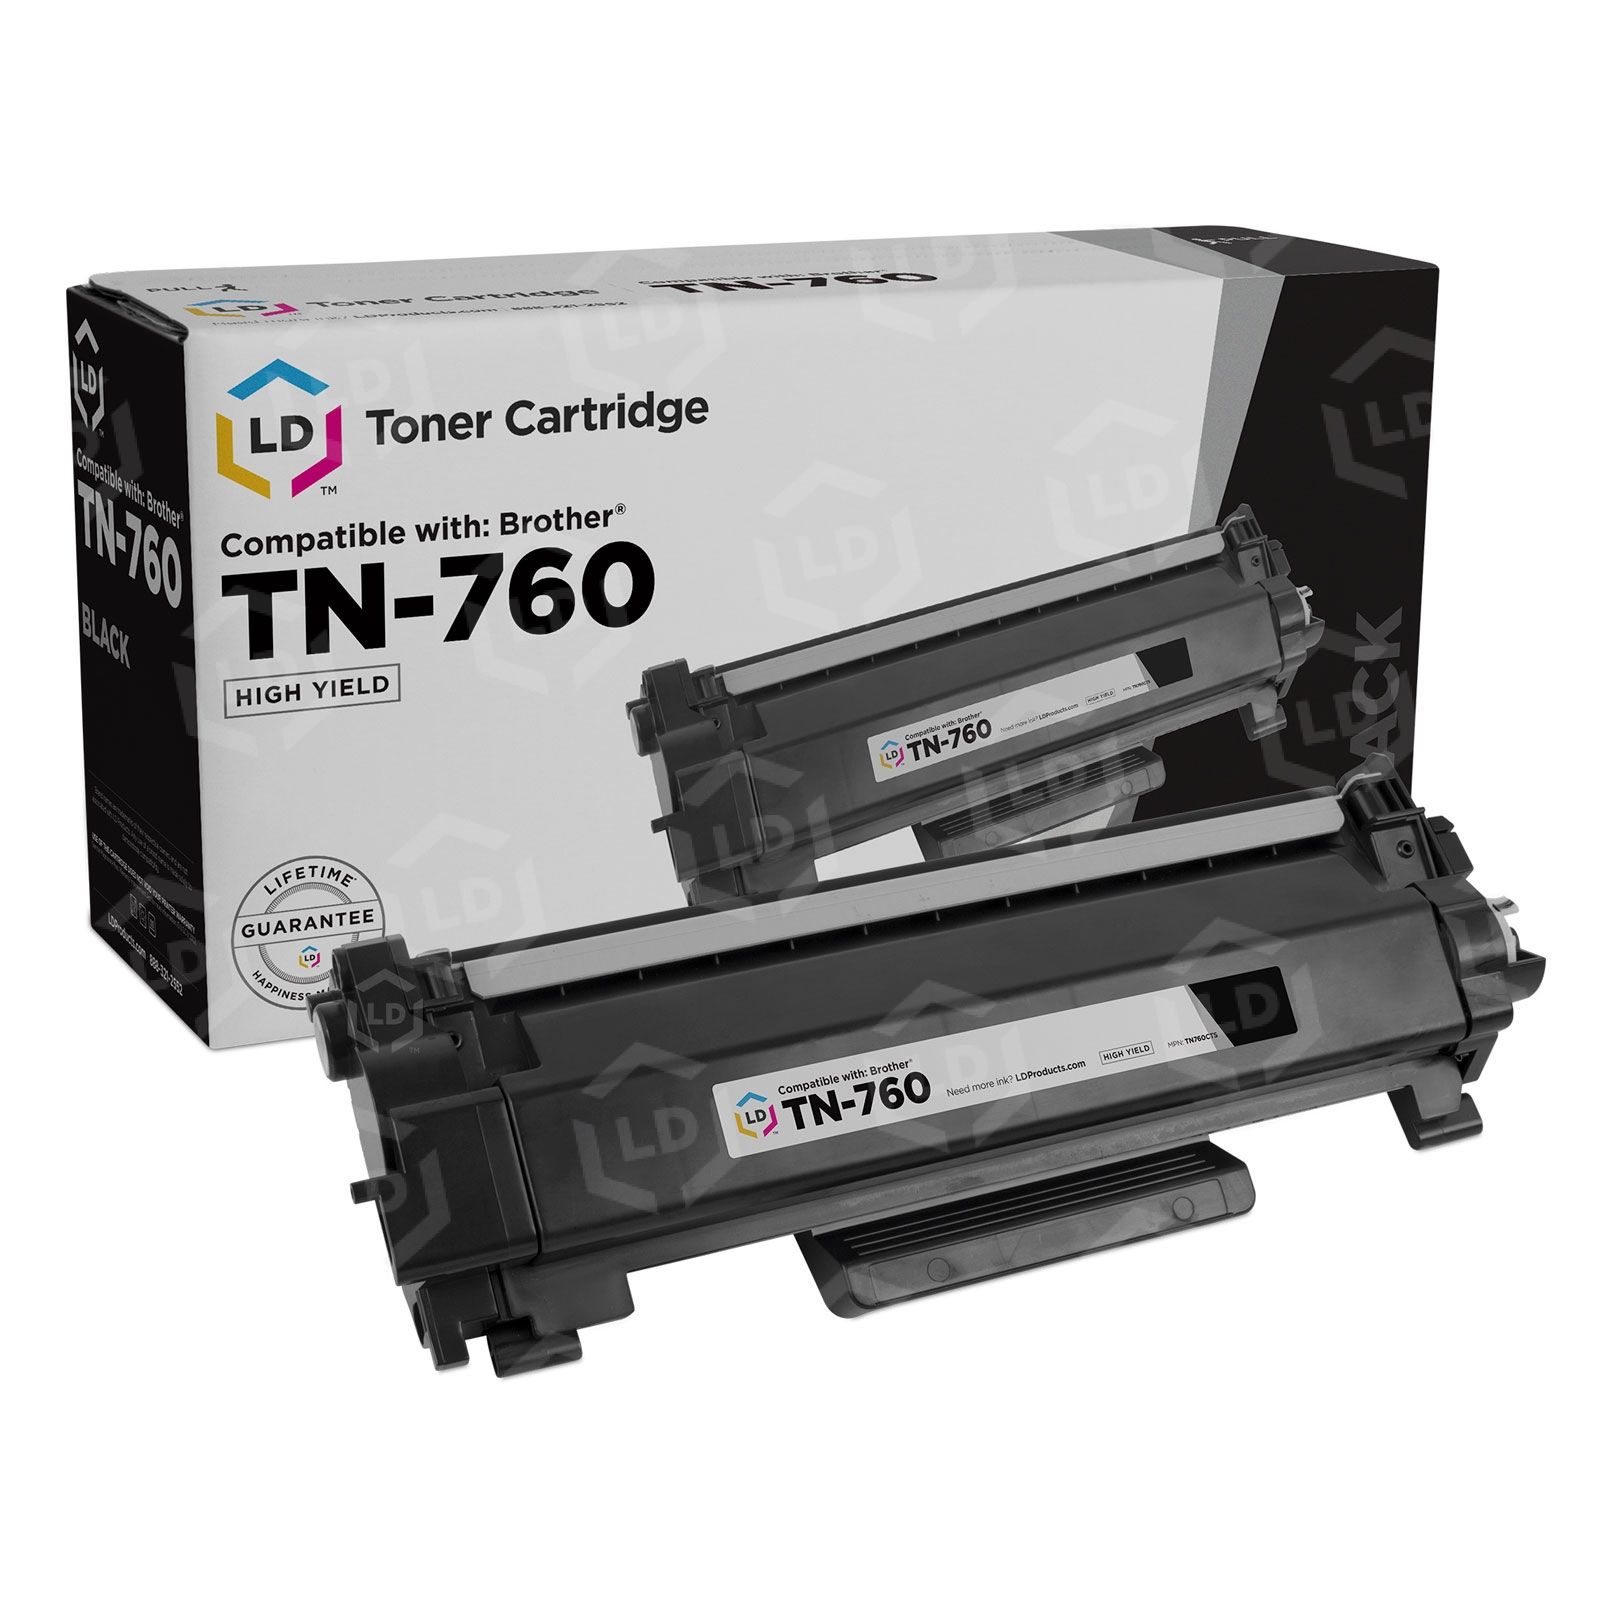 TN760 TN 760 TN730 TN 730 Toner Cartridge for MFC-L2750DW DCP-L2550DW  HL-L2395DW L2350DW L2730DW MFC-L2710DW L2730DW L2717DW L2690DW HL-L2390DW  HL-L2370DW L2325DW (Black,4 Pack) 